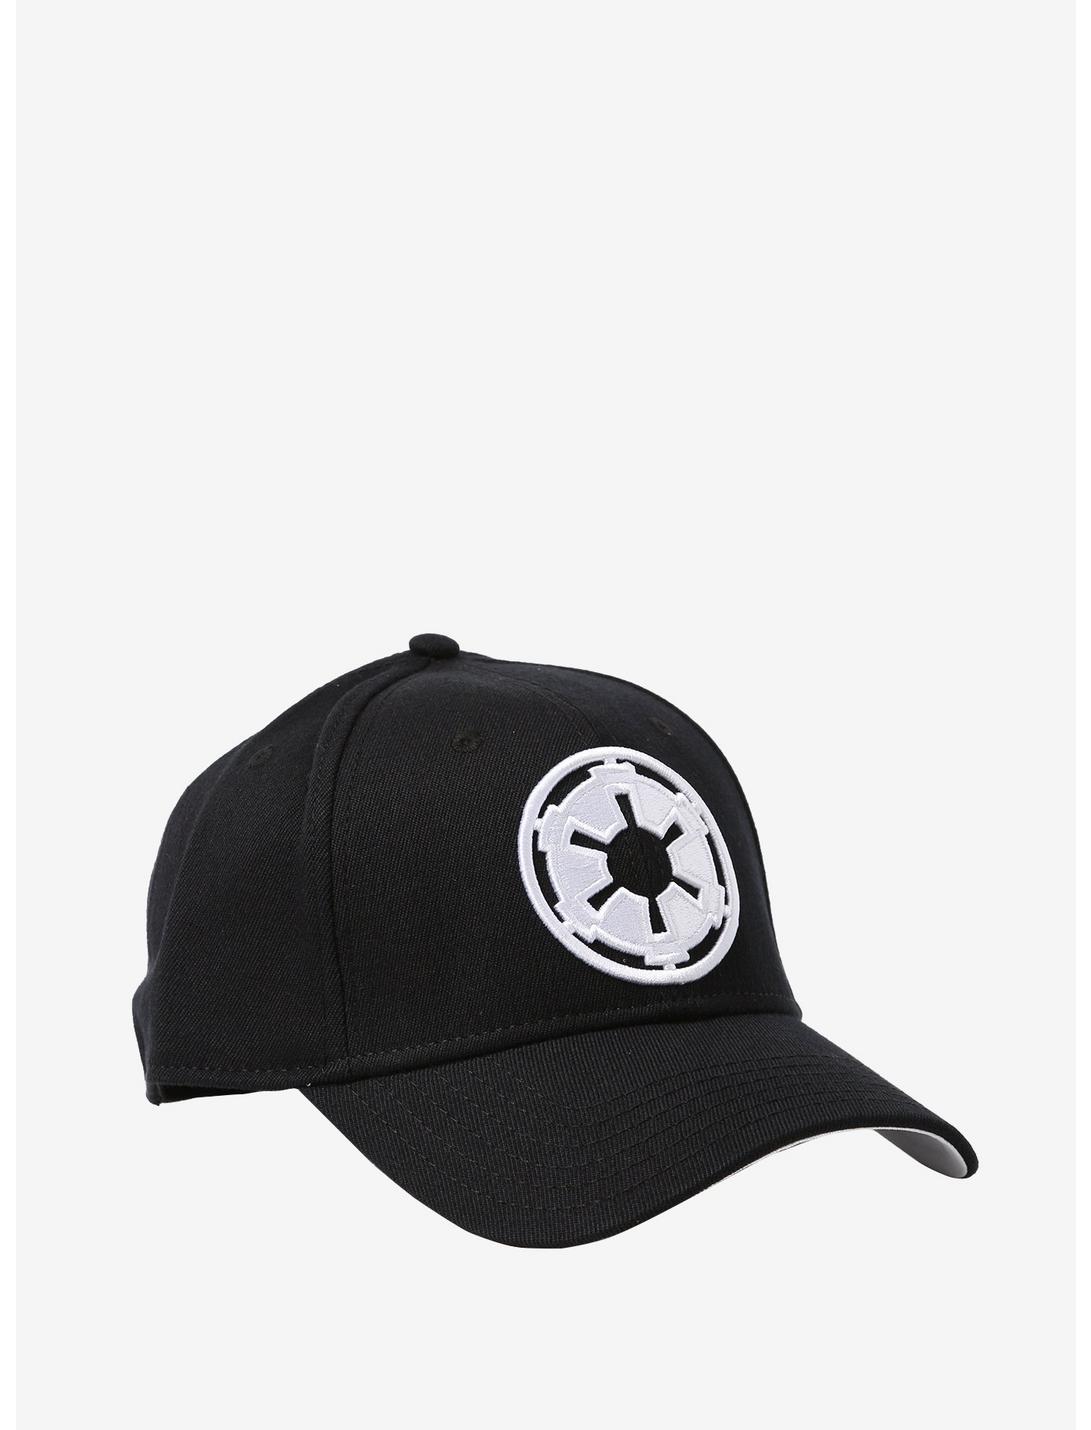 Star Wars Galactic Empire Flex Hat, , hi-res